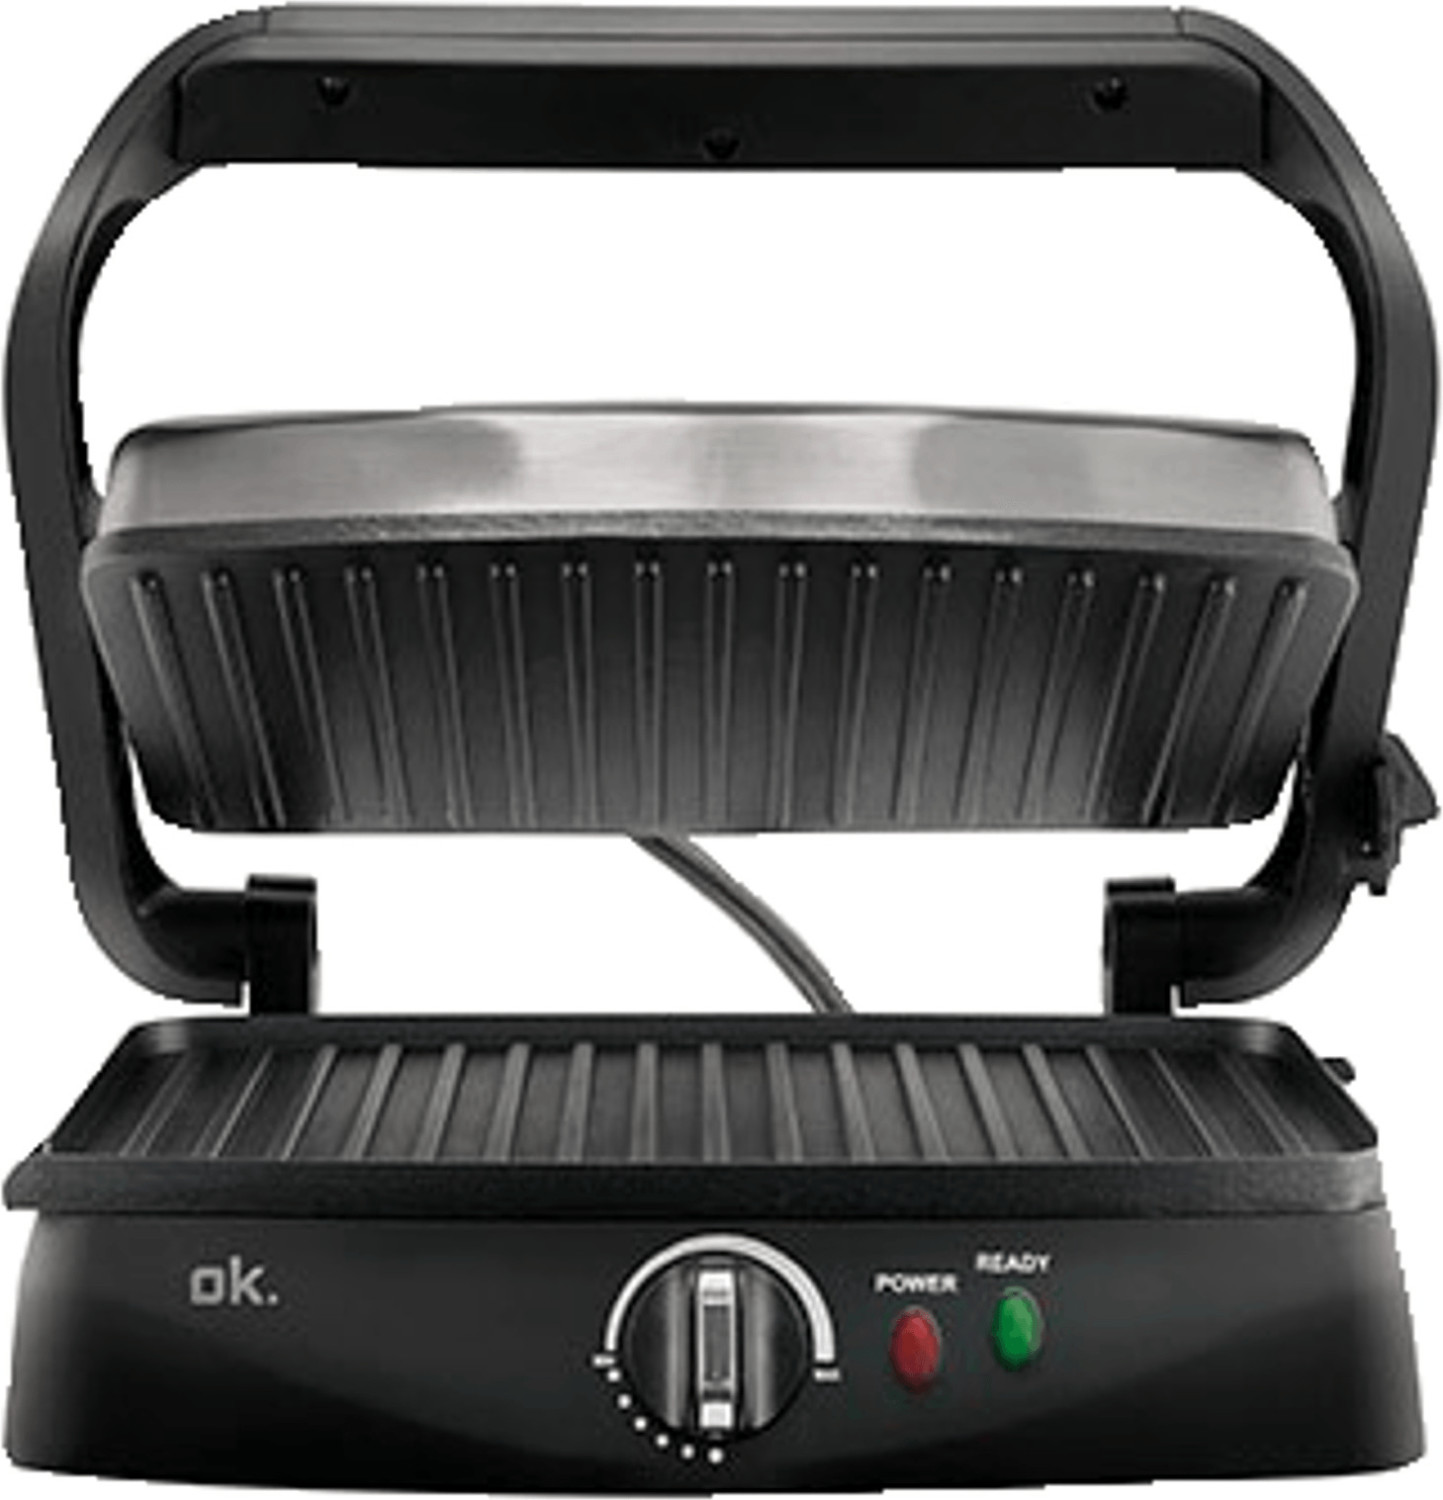 Ok.-OCG 105-Toaster-Used A-1400 Watts